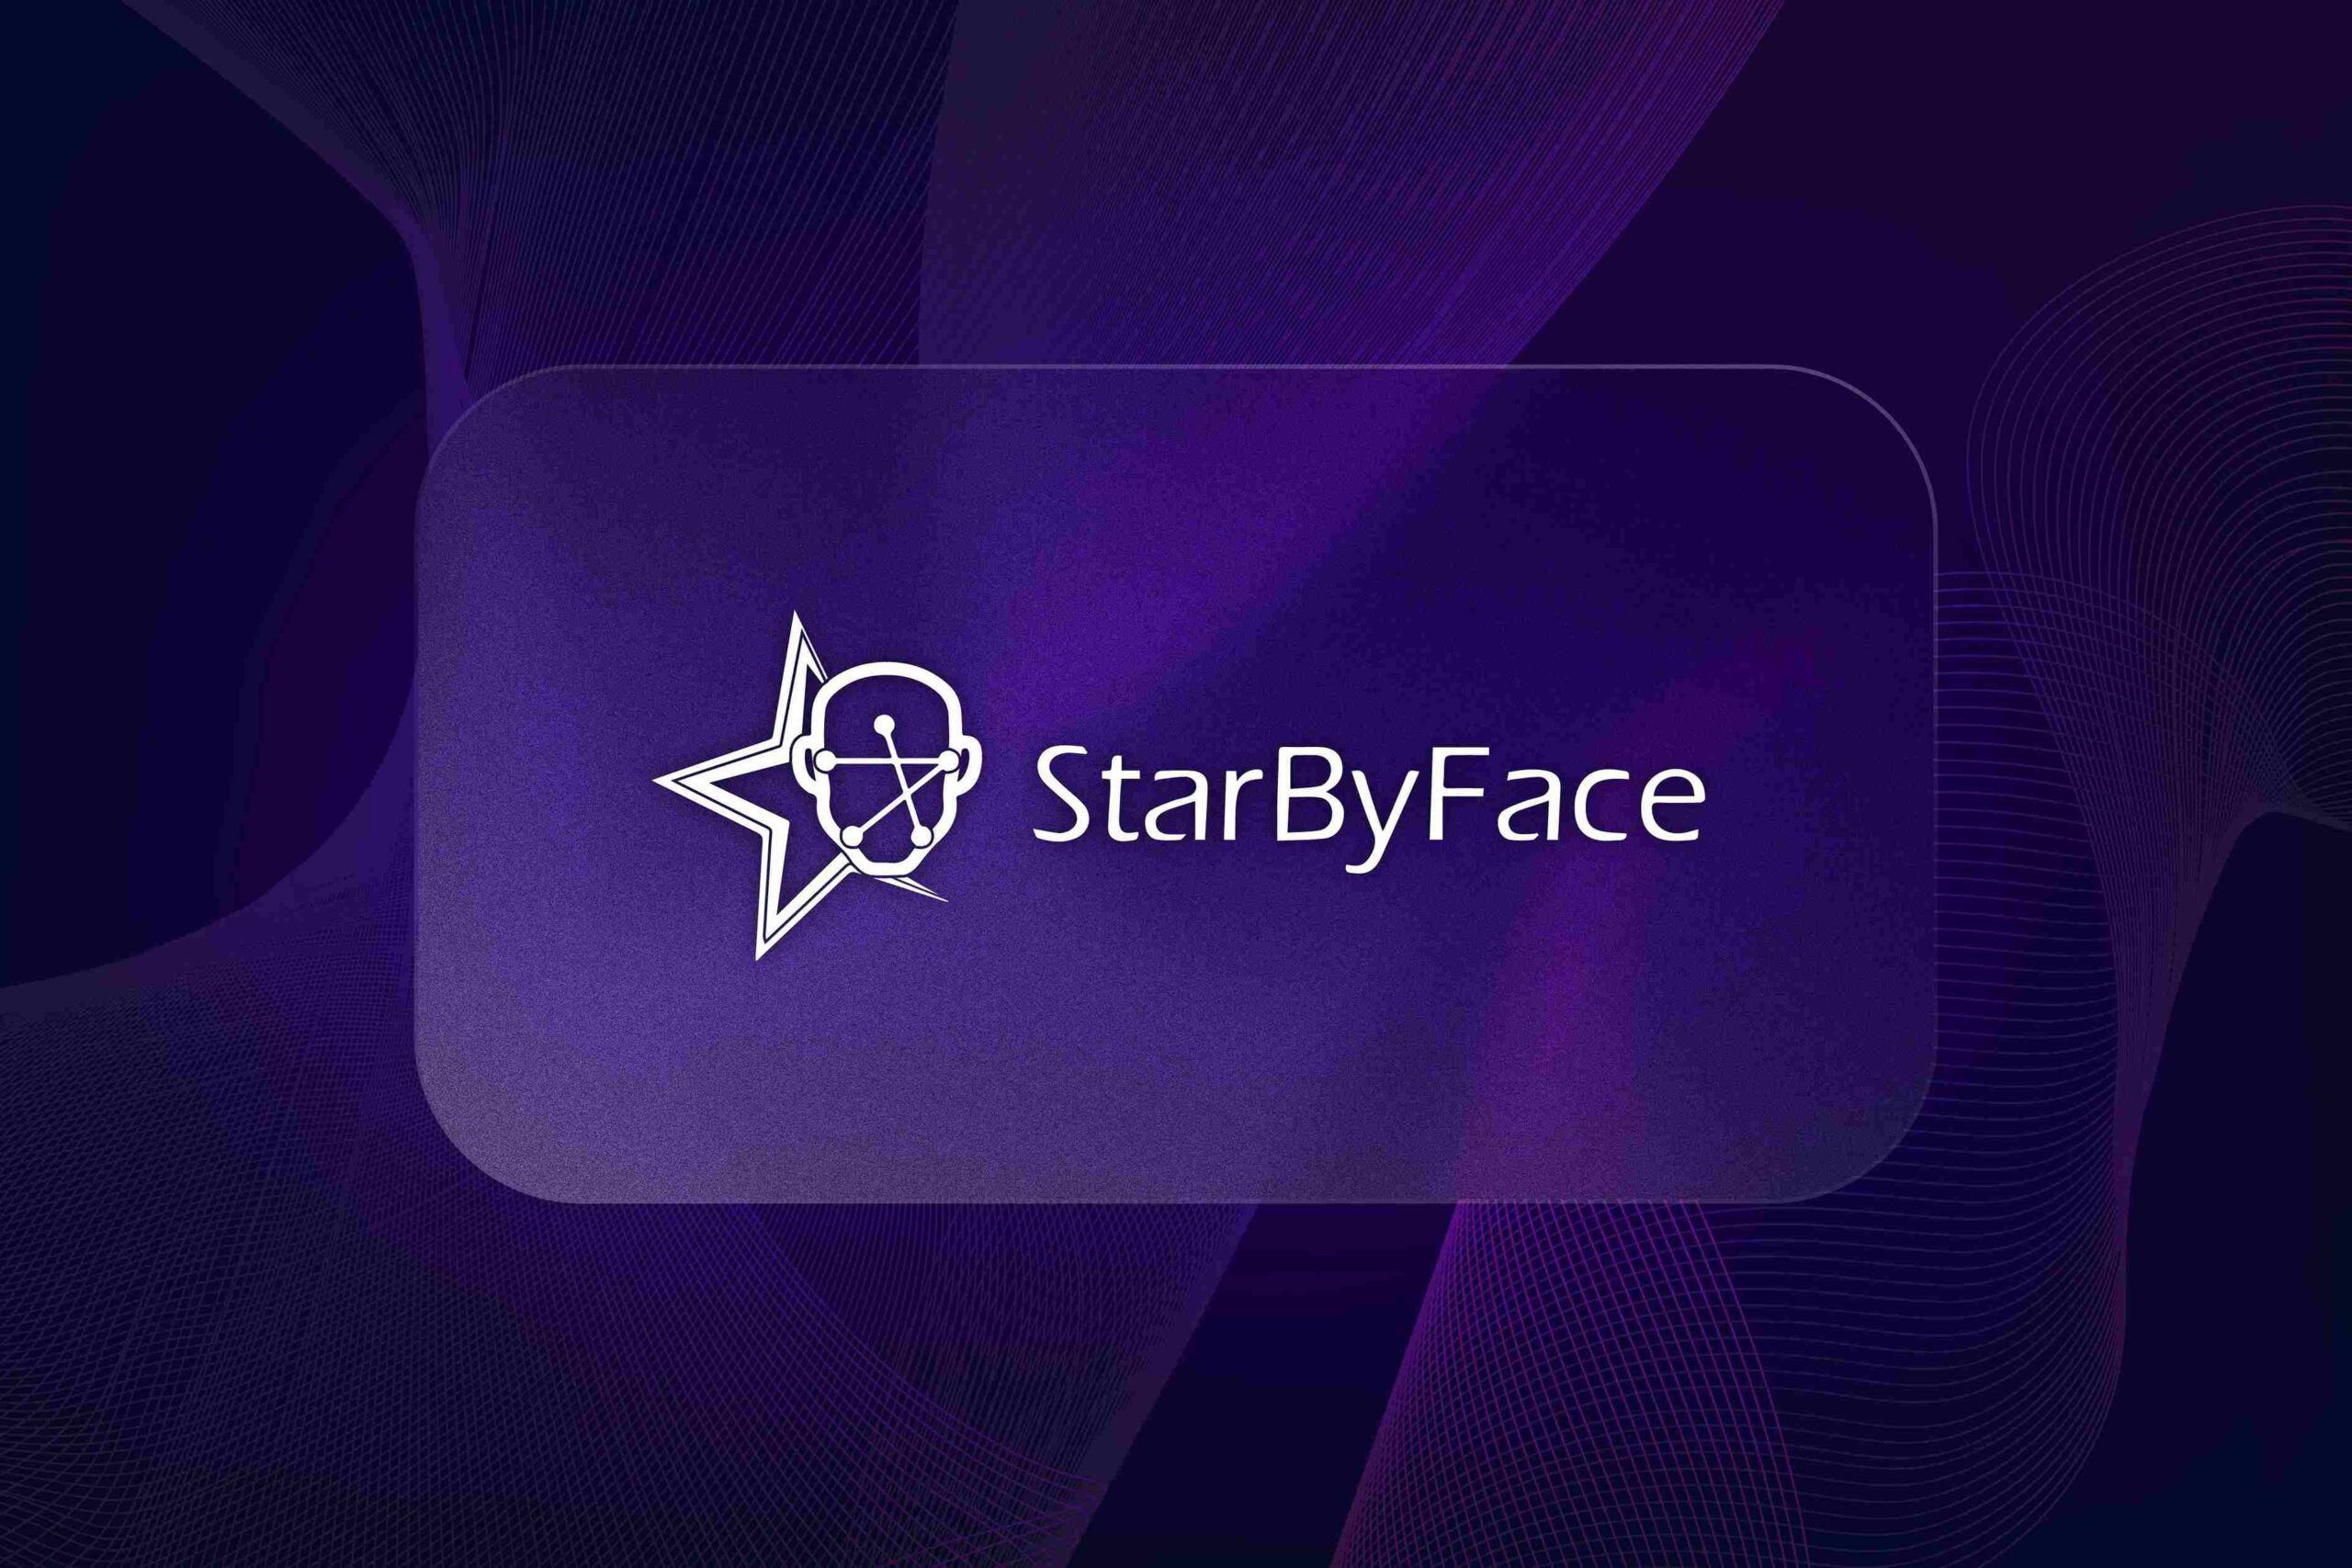 StarByFace.com